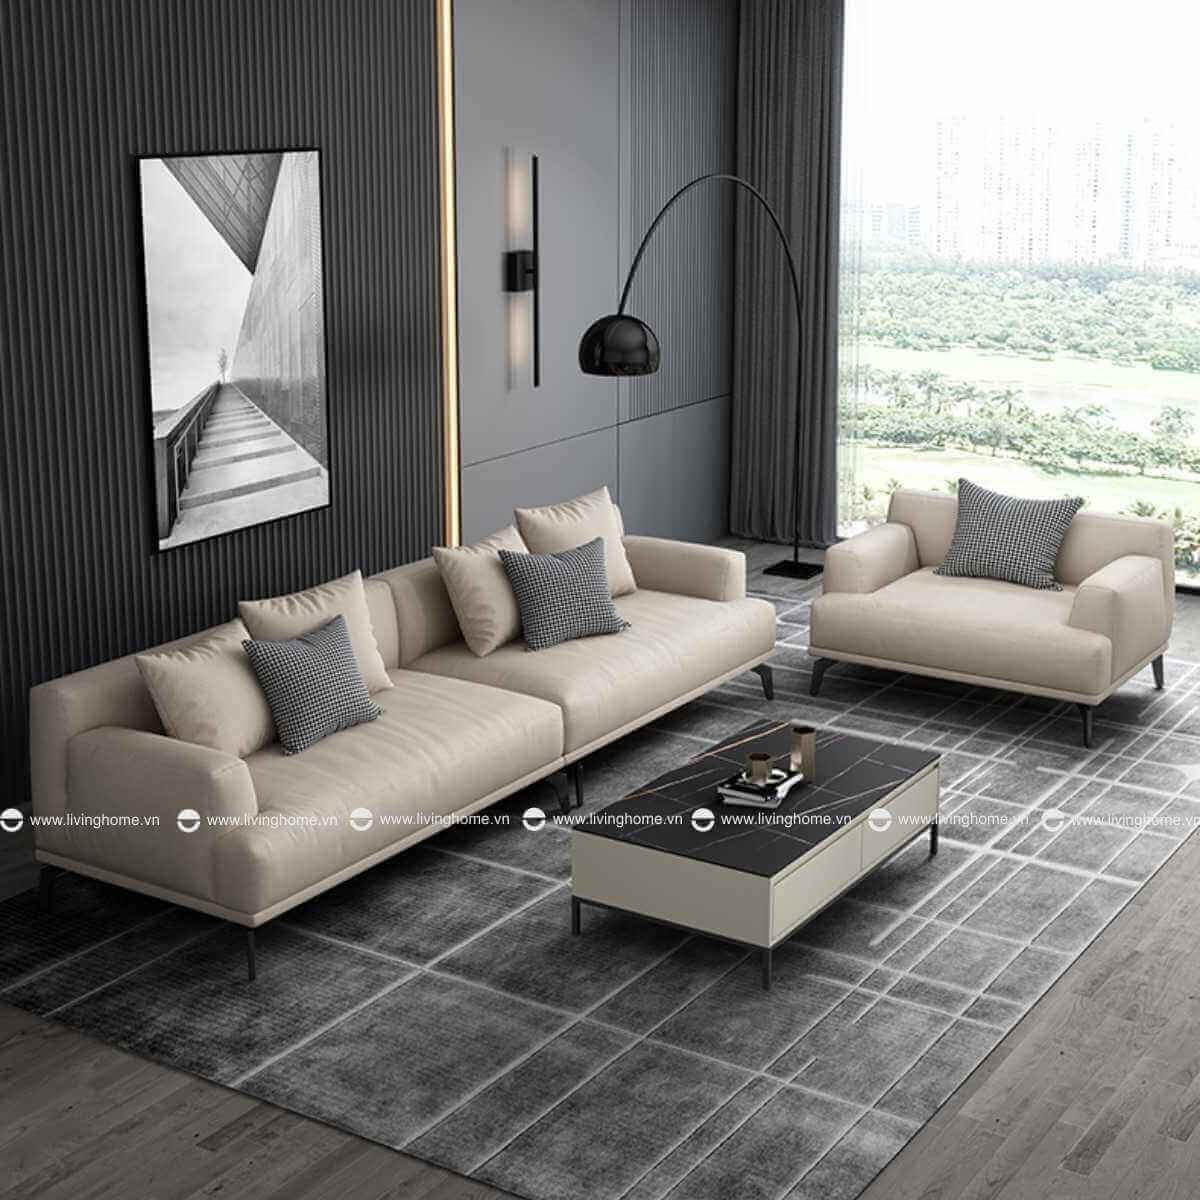 Mẫu sofa với phong cách Tối Giản - Đương Đại